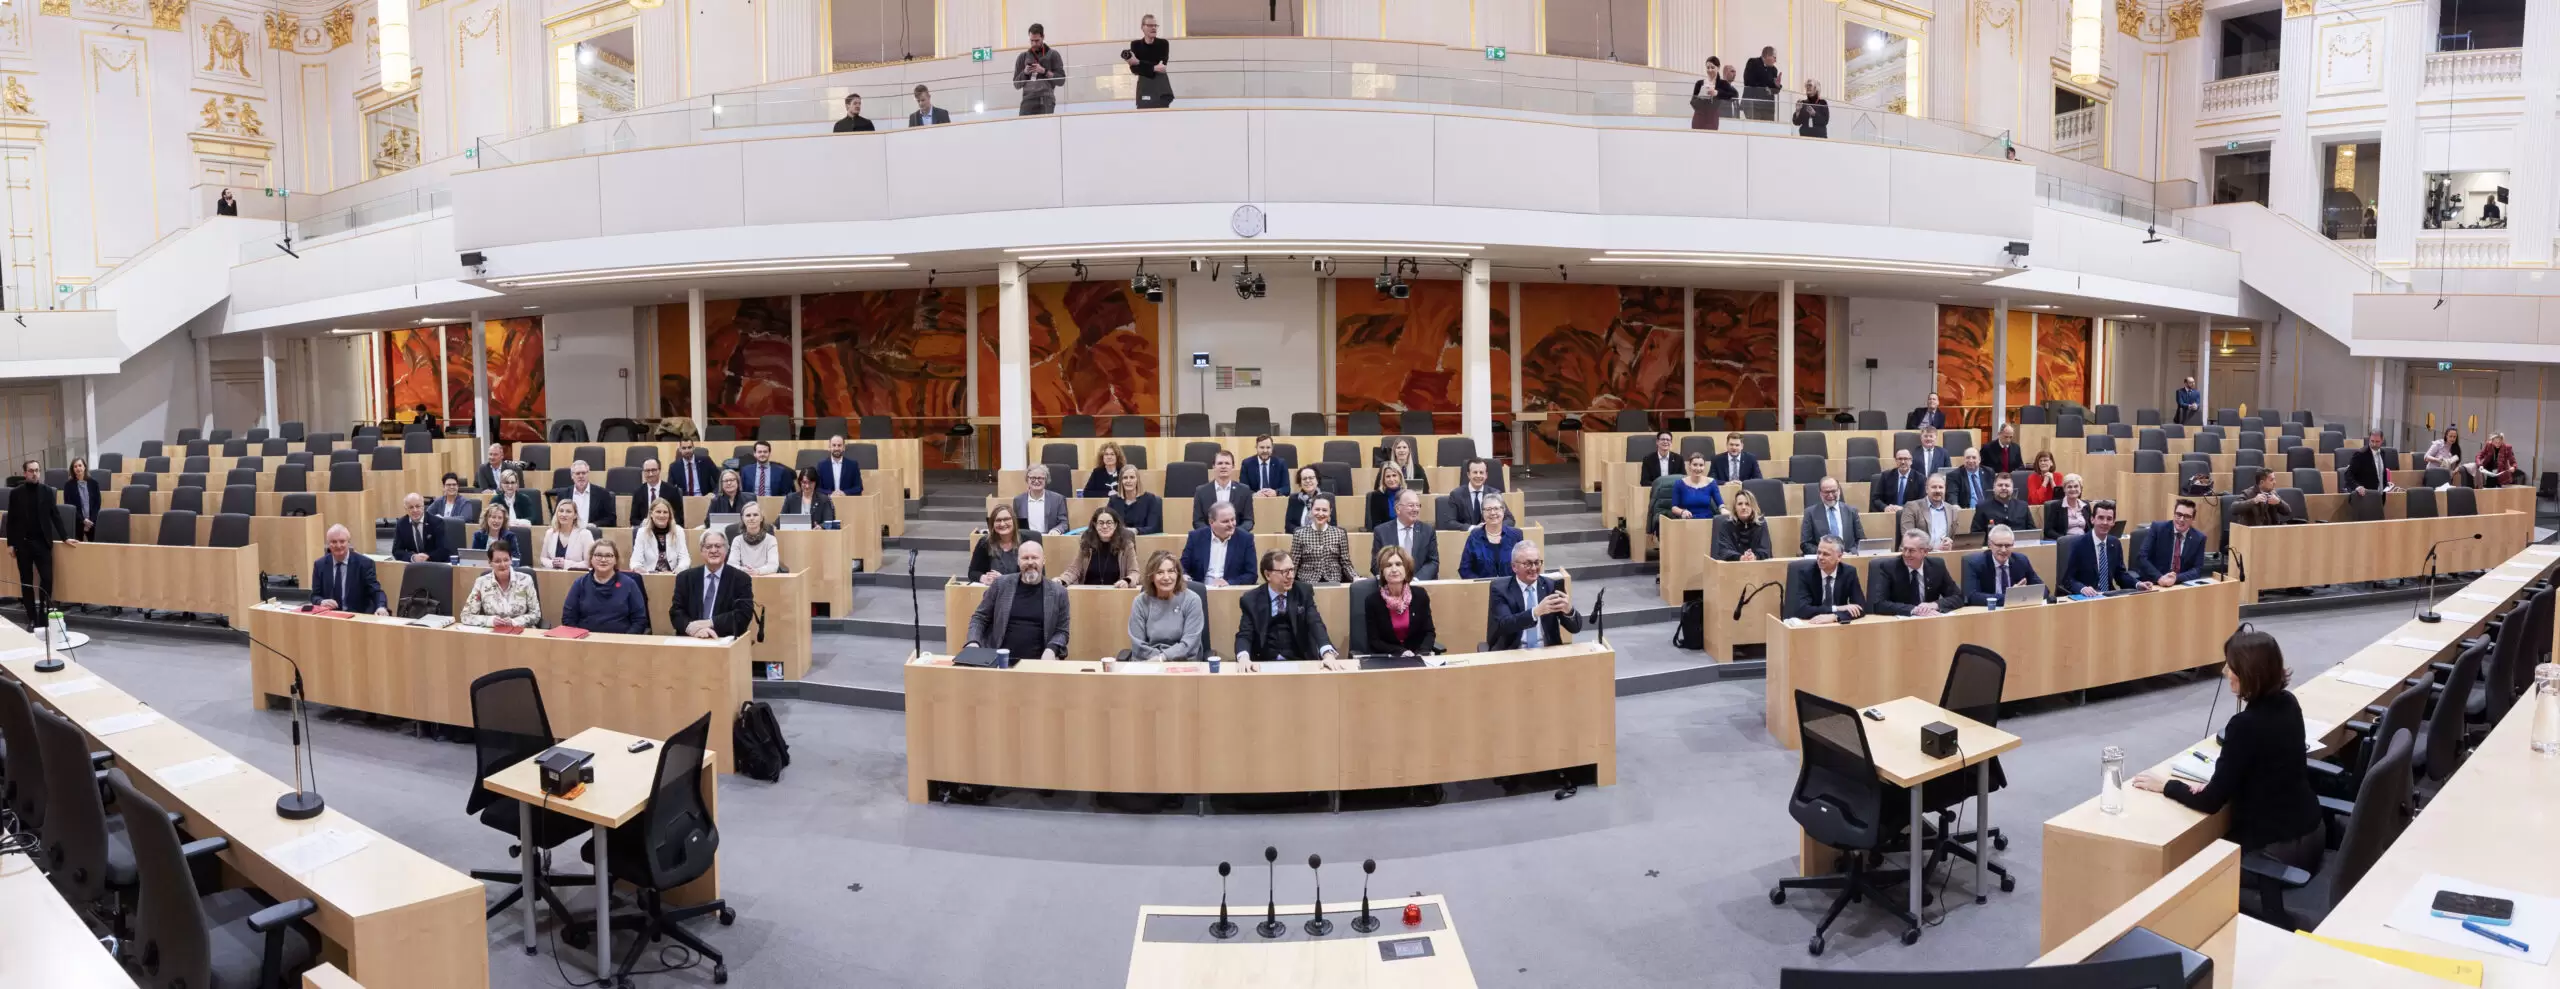 Europa-Debatte und umfangreiche Tagesordnung: Dr Bundesrat tagte letztmals in der Hofburg. Foto: Bubu Dujmic